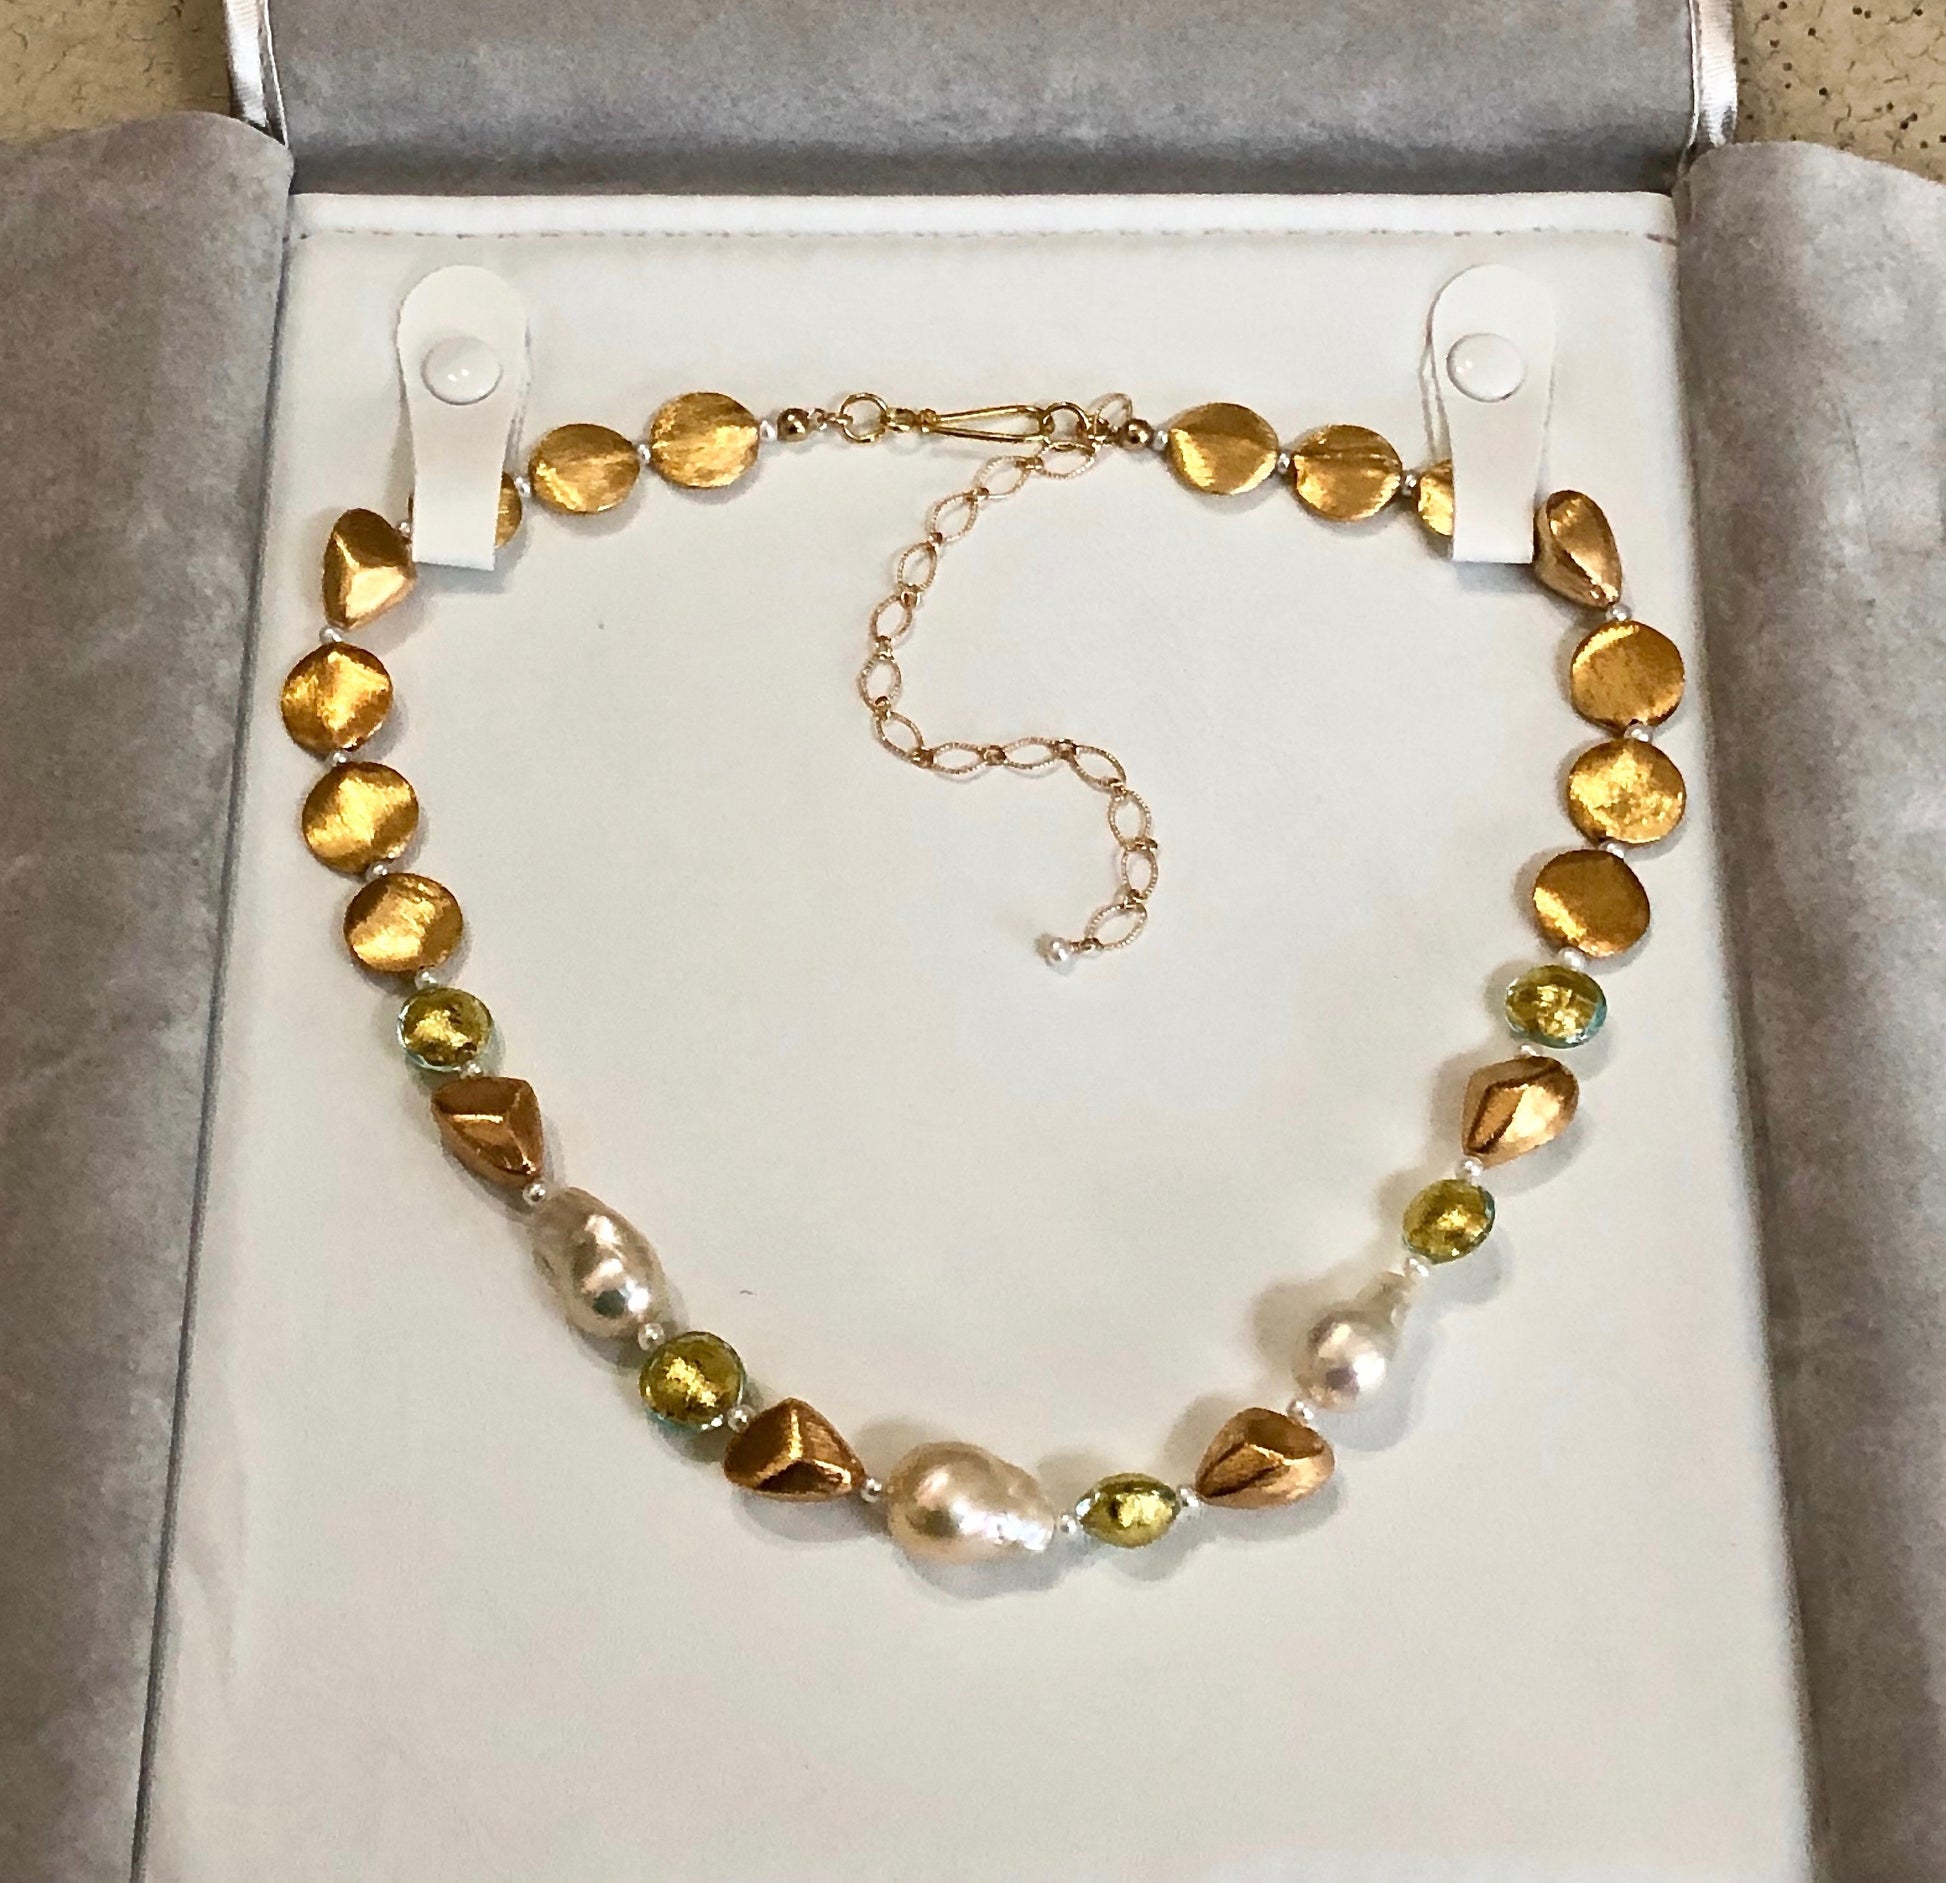 Italian jewelry folder with Arpaia Jewelry necklace